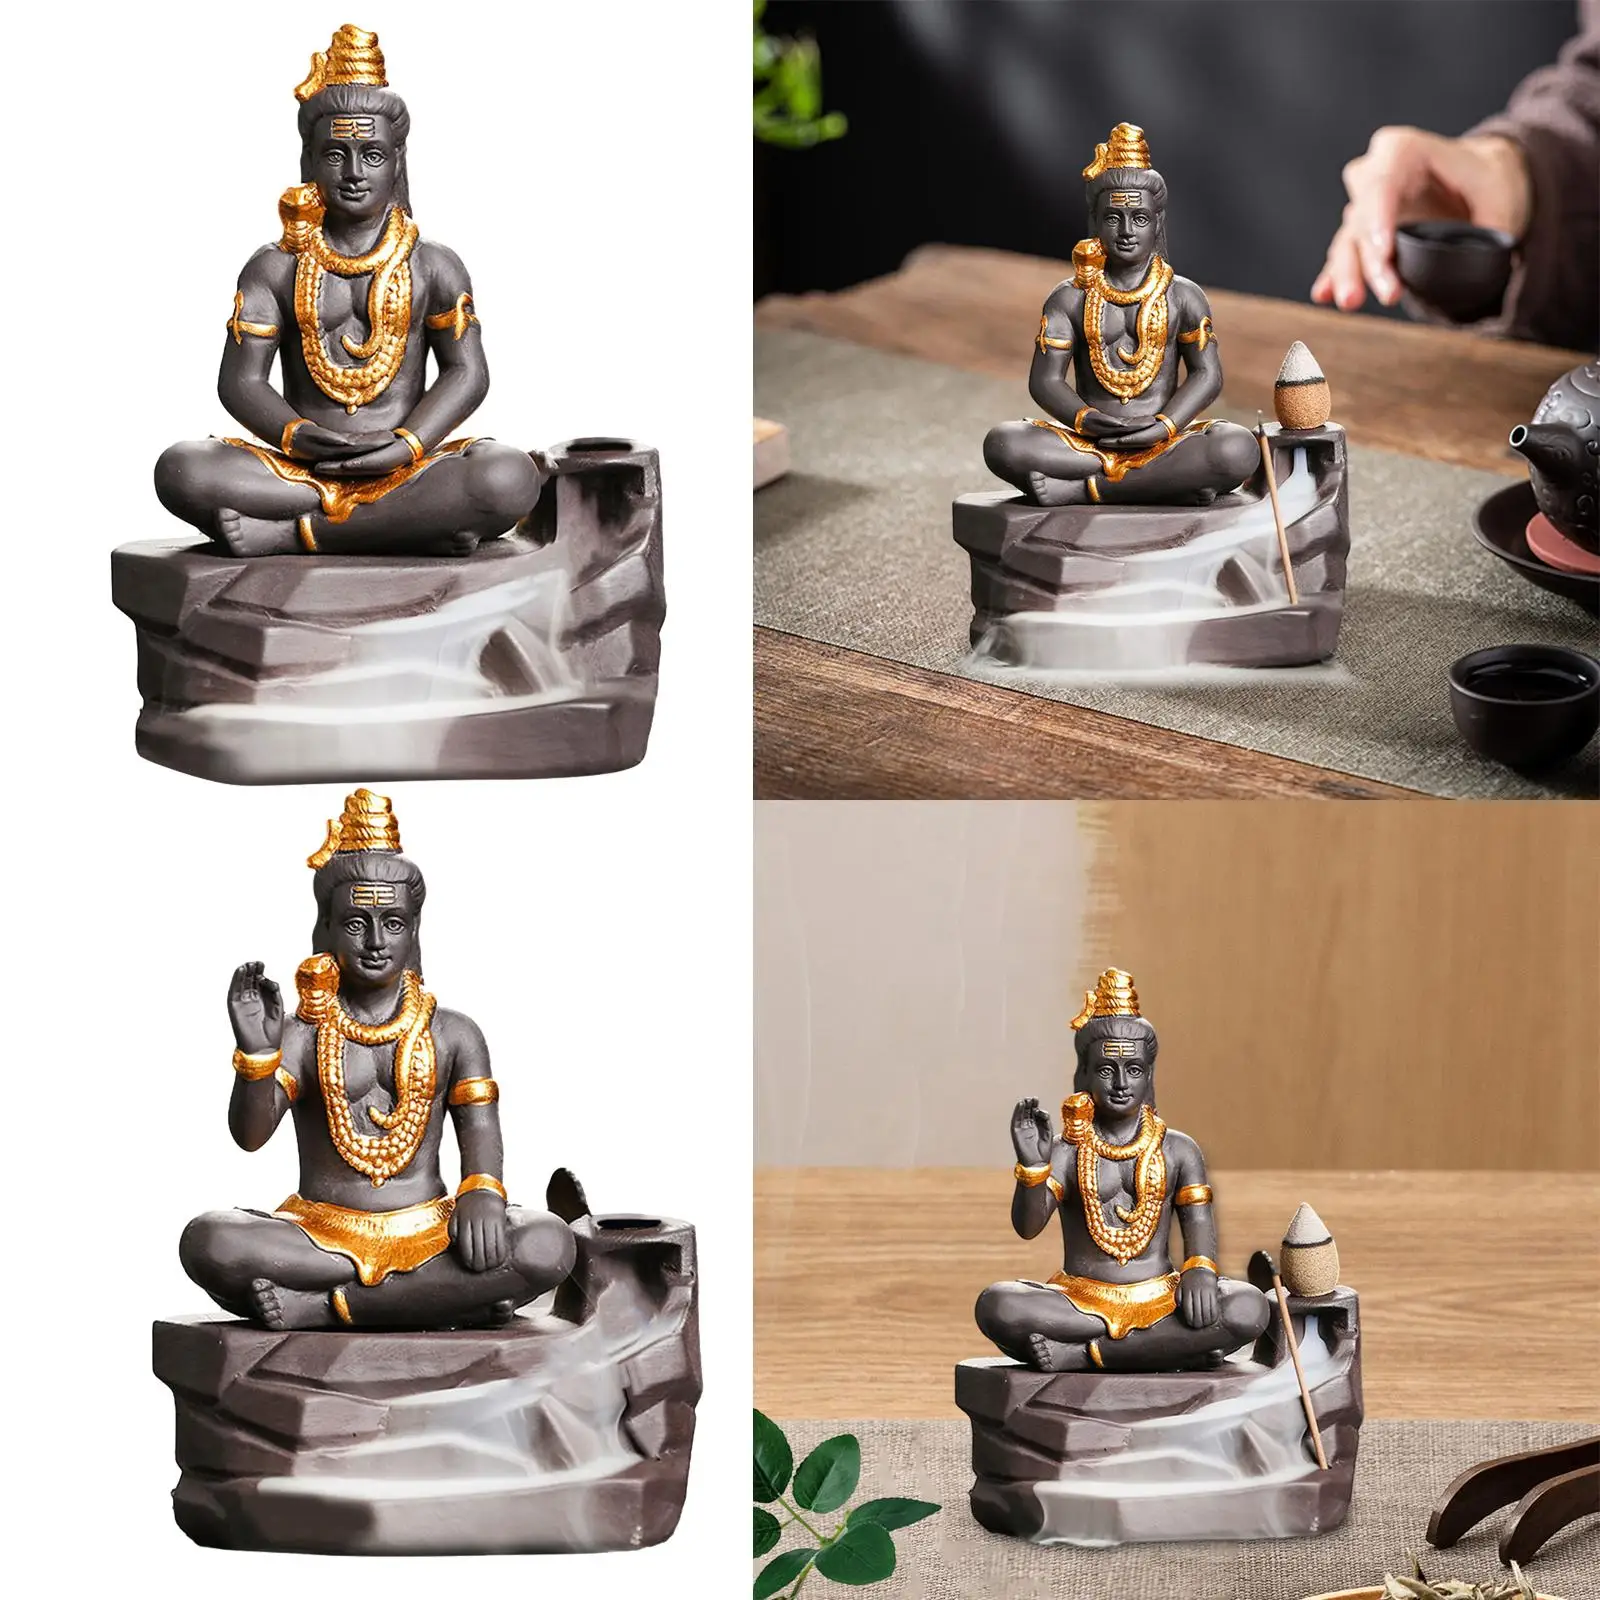 Backflow Incense Burner Holder Creative Southeast Asian Sacred Feng Shui Zen Figurine for Office Home Decor Meditation Home Yoga